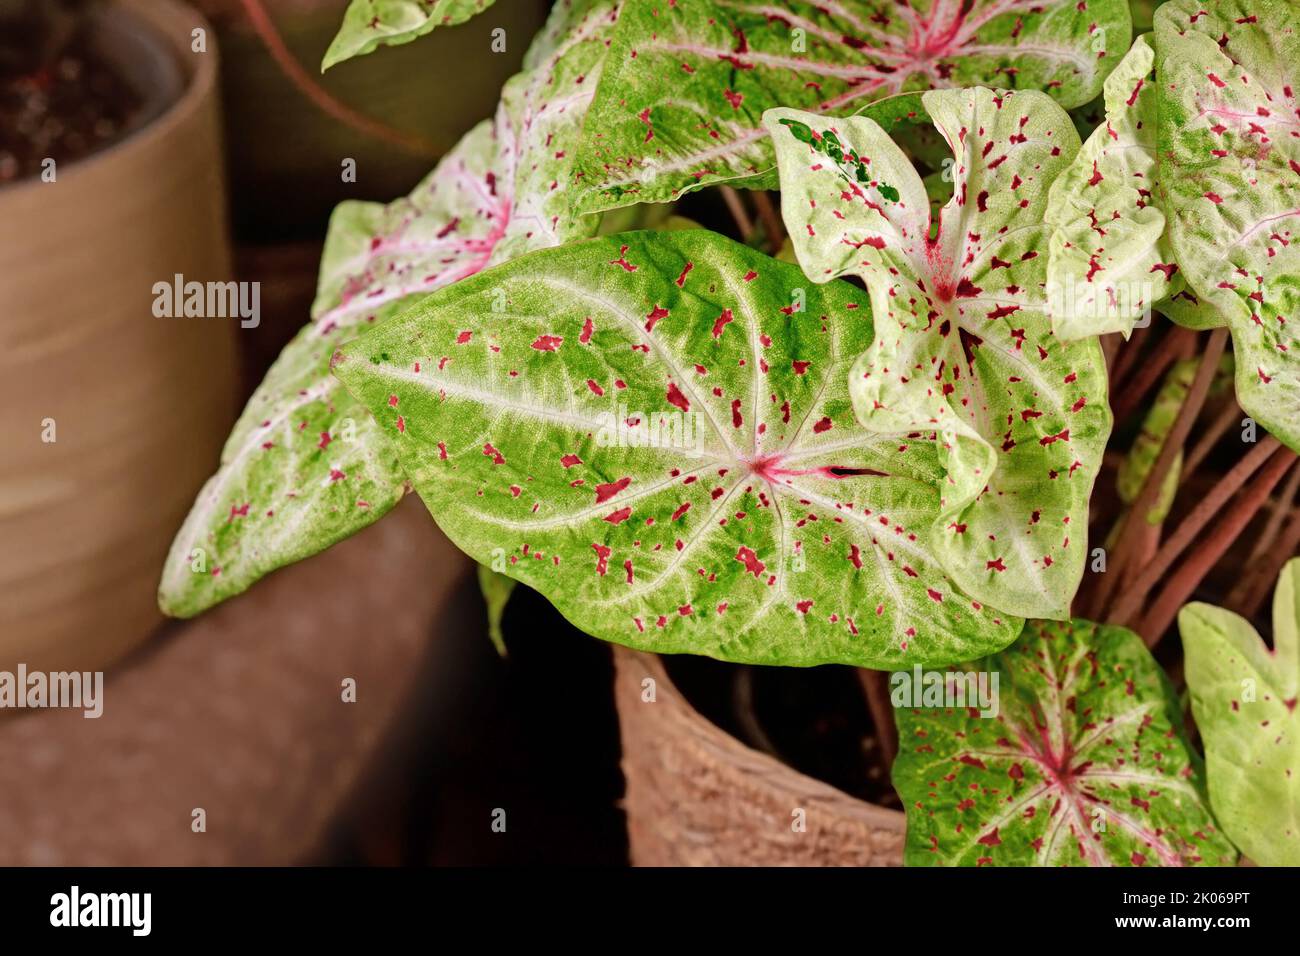 Hoja de 'Caladium Miss Muffet' houseplant con hojas rosadas y verdes con puntos rojos Foto de stock